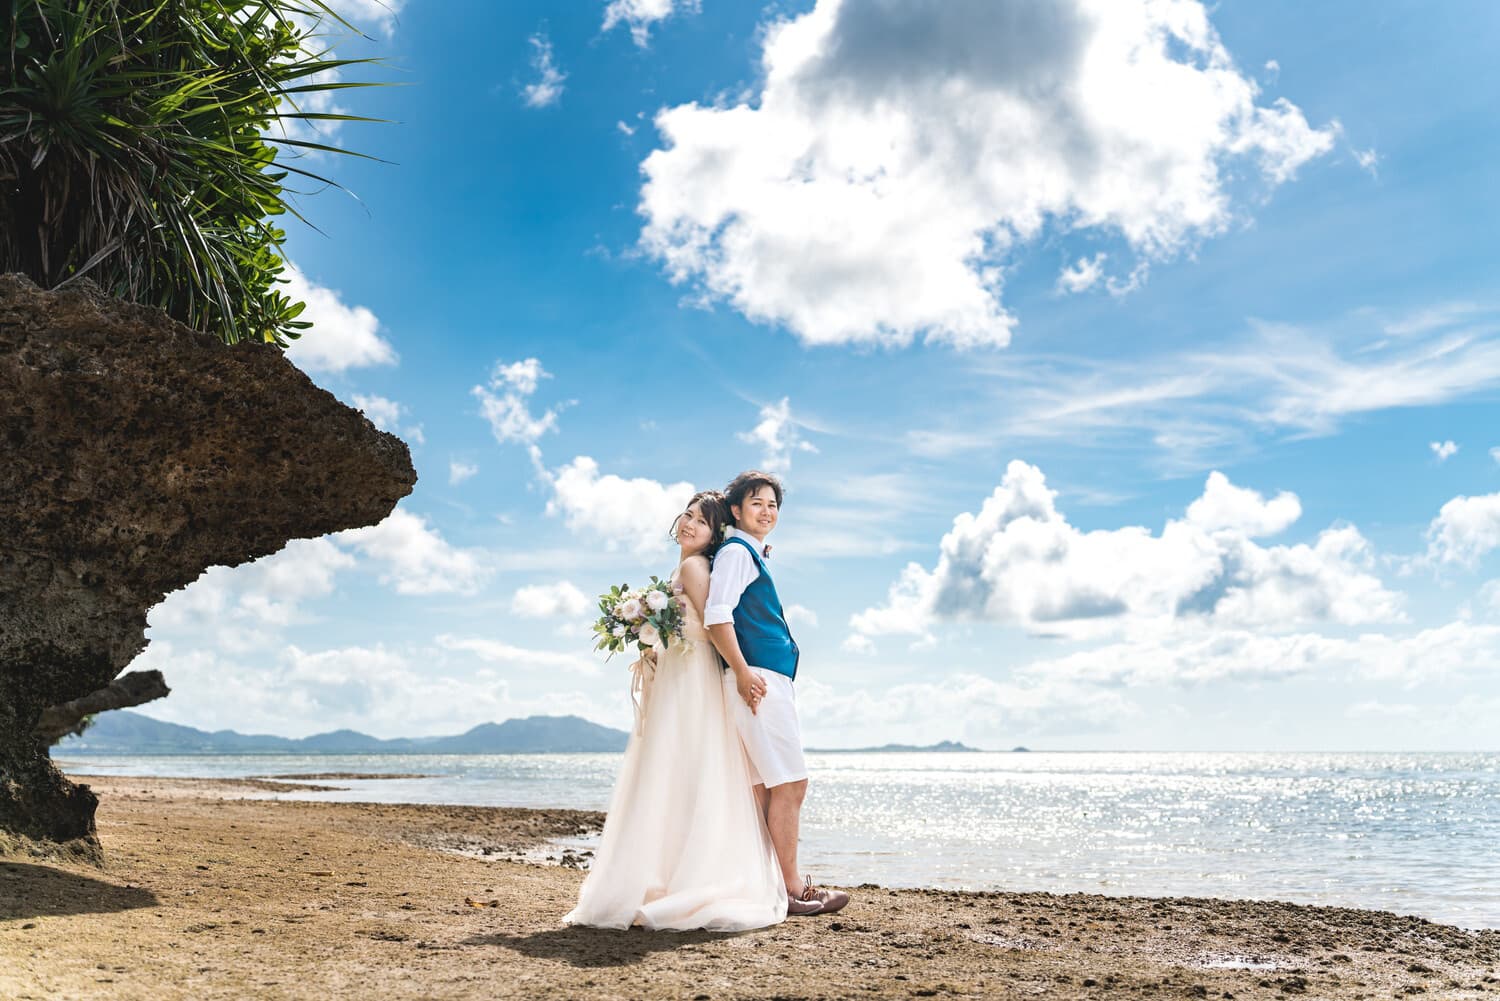 石垣島のビーチで青空と海を背景に背中合わせの新郎新婦